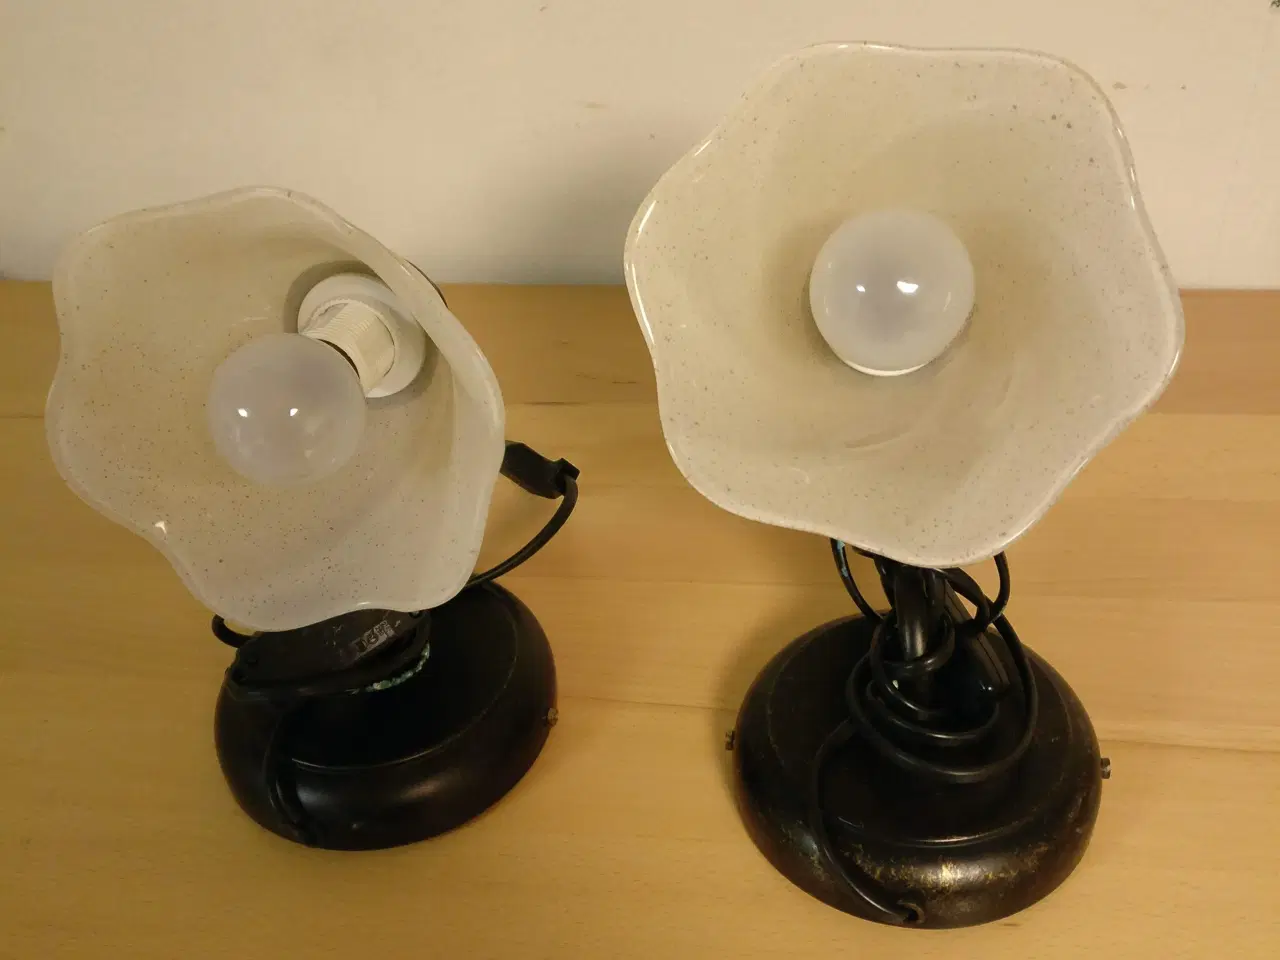 Billede 1 - 2 fine lampetter sælges